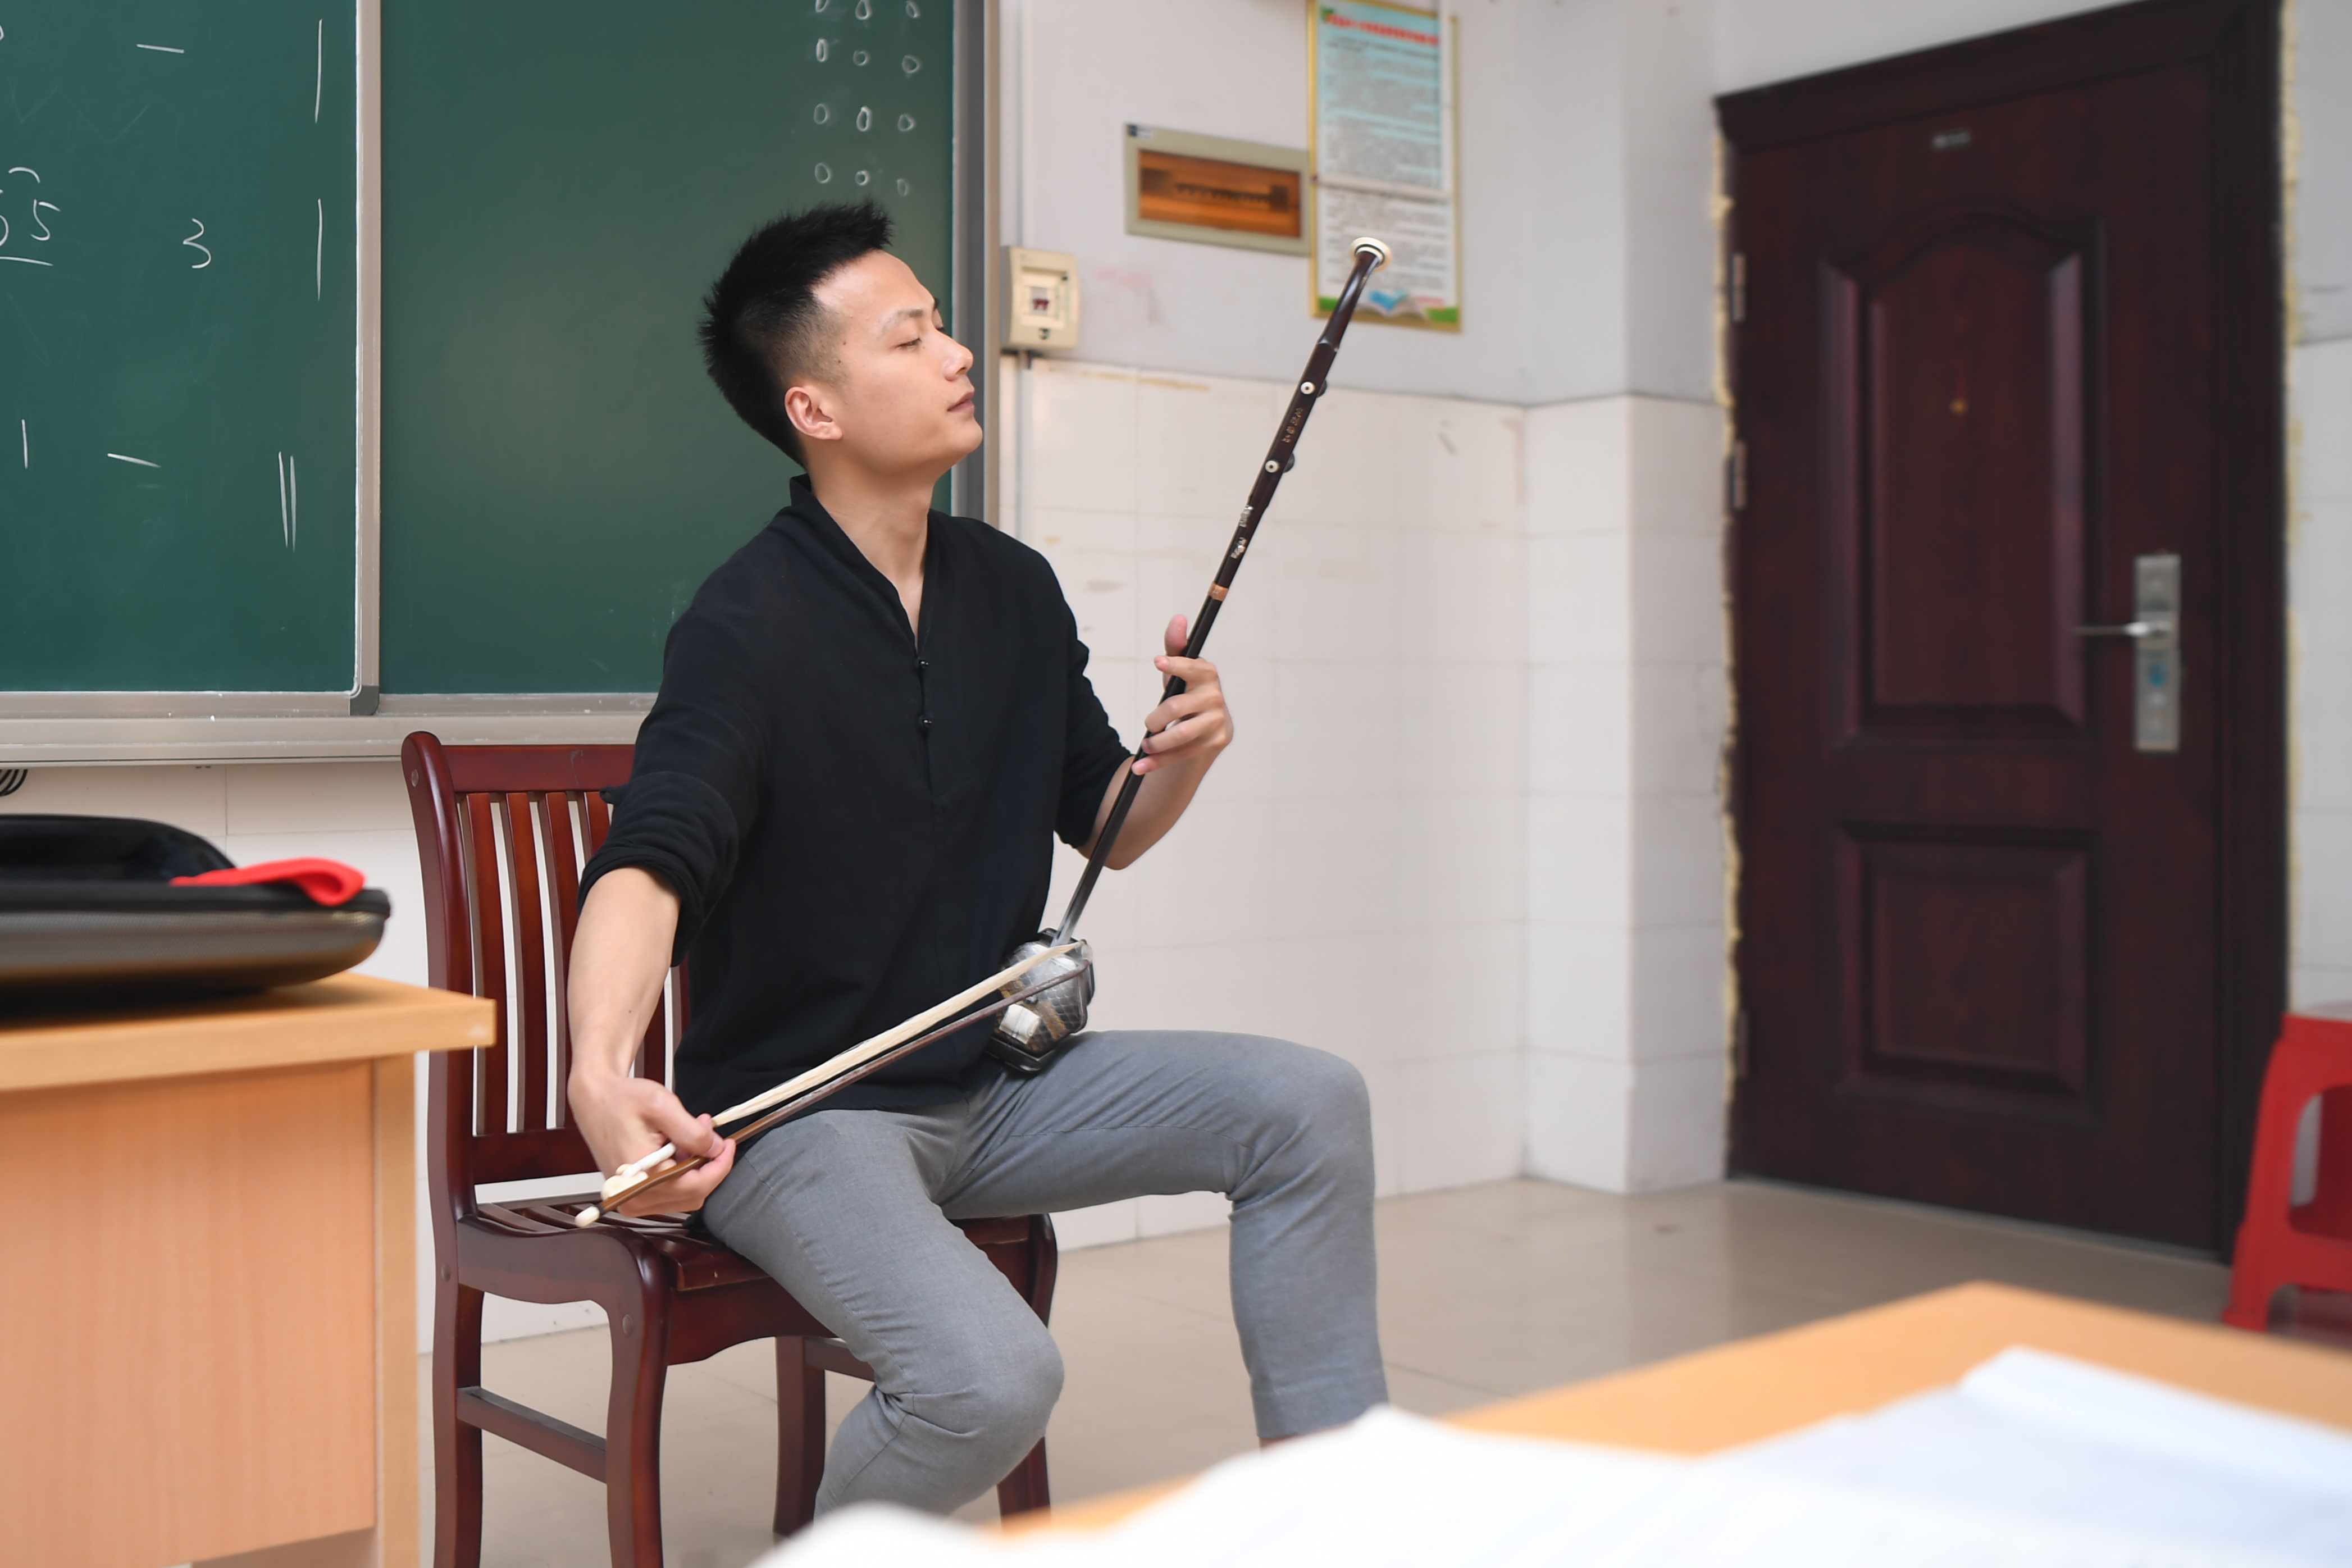 在湖南省湘西土家族苗族自治州,戴发在泸溪县第五中学教室内演奏二胡